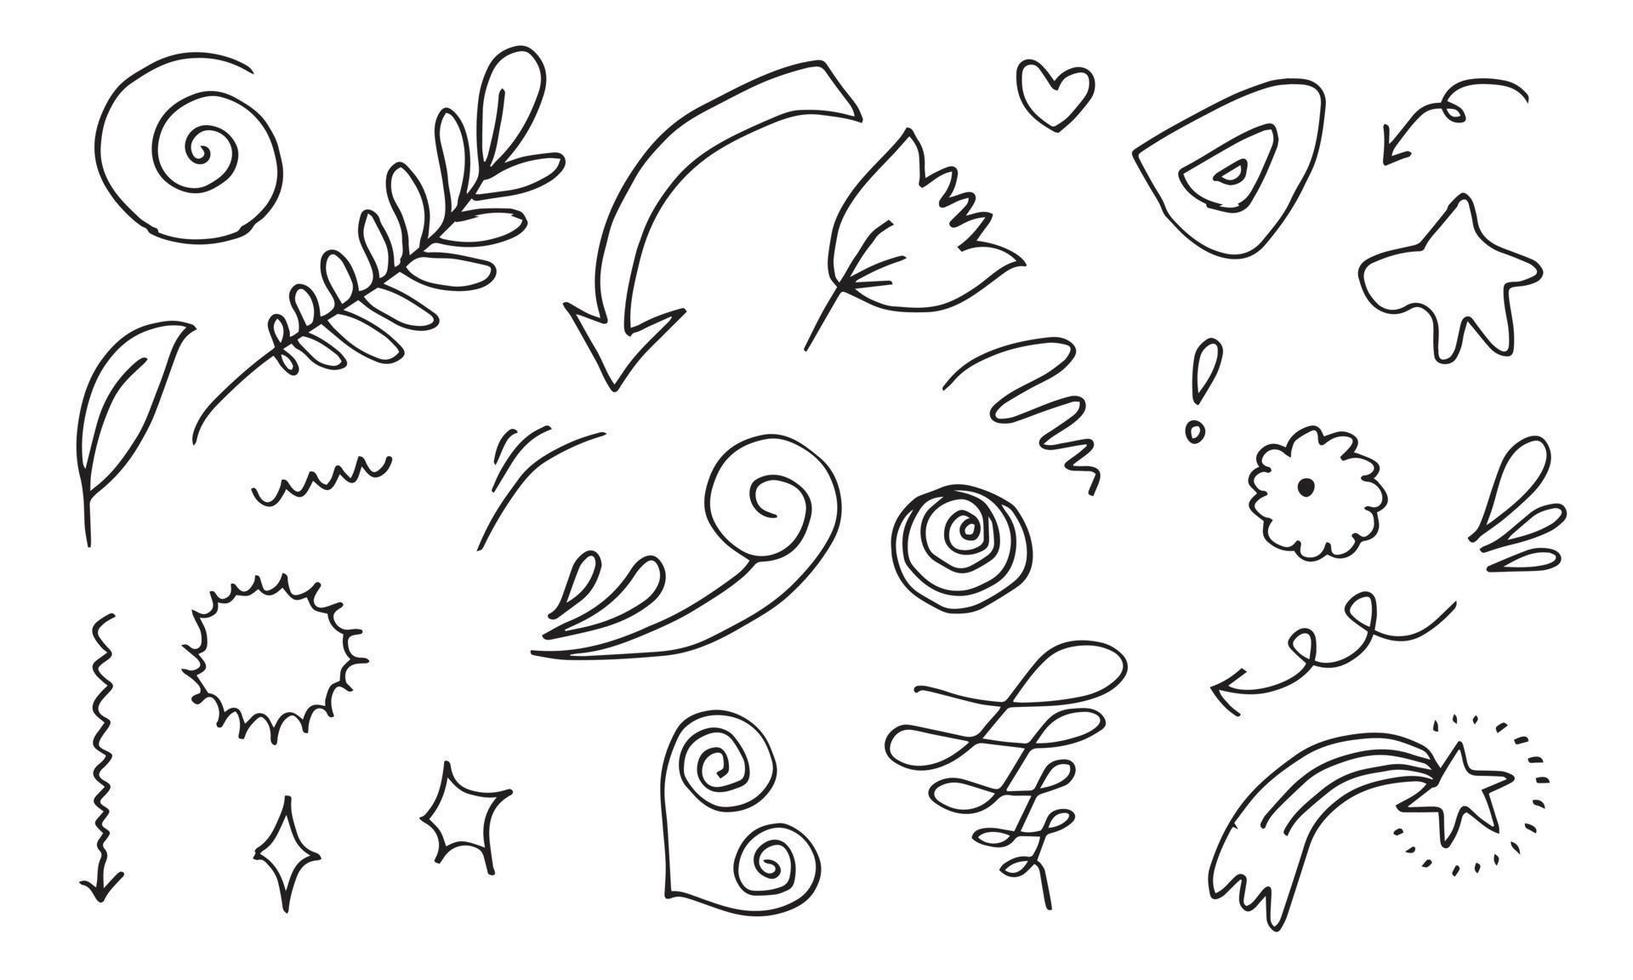 elementos de design doodle desenhados à mão, preto sobre fundo branco. elementos de design de esboço de doodle vetor